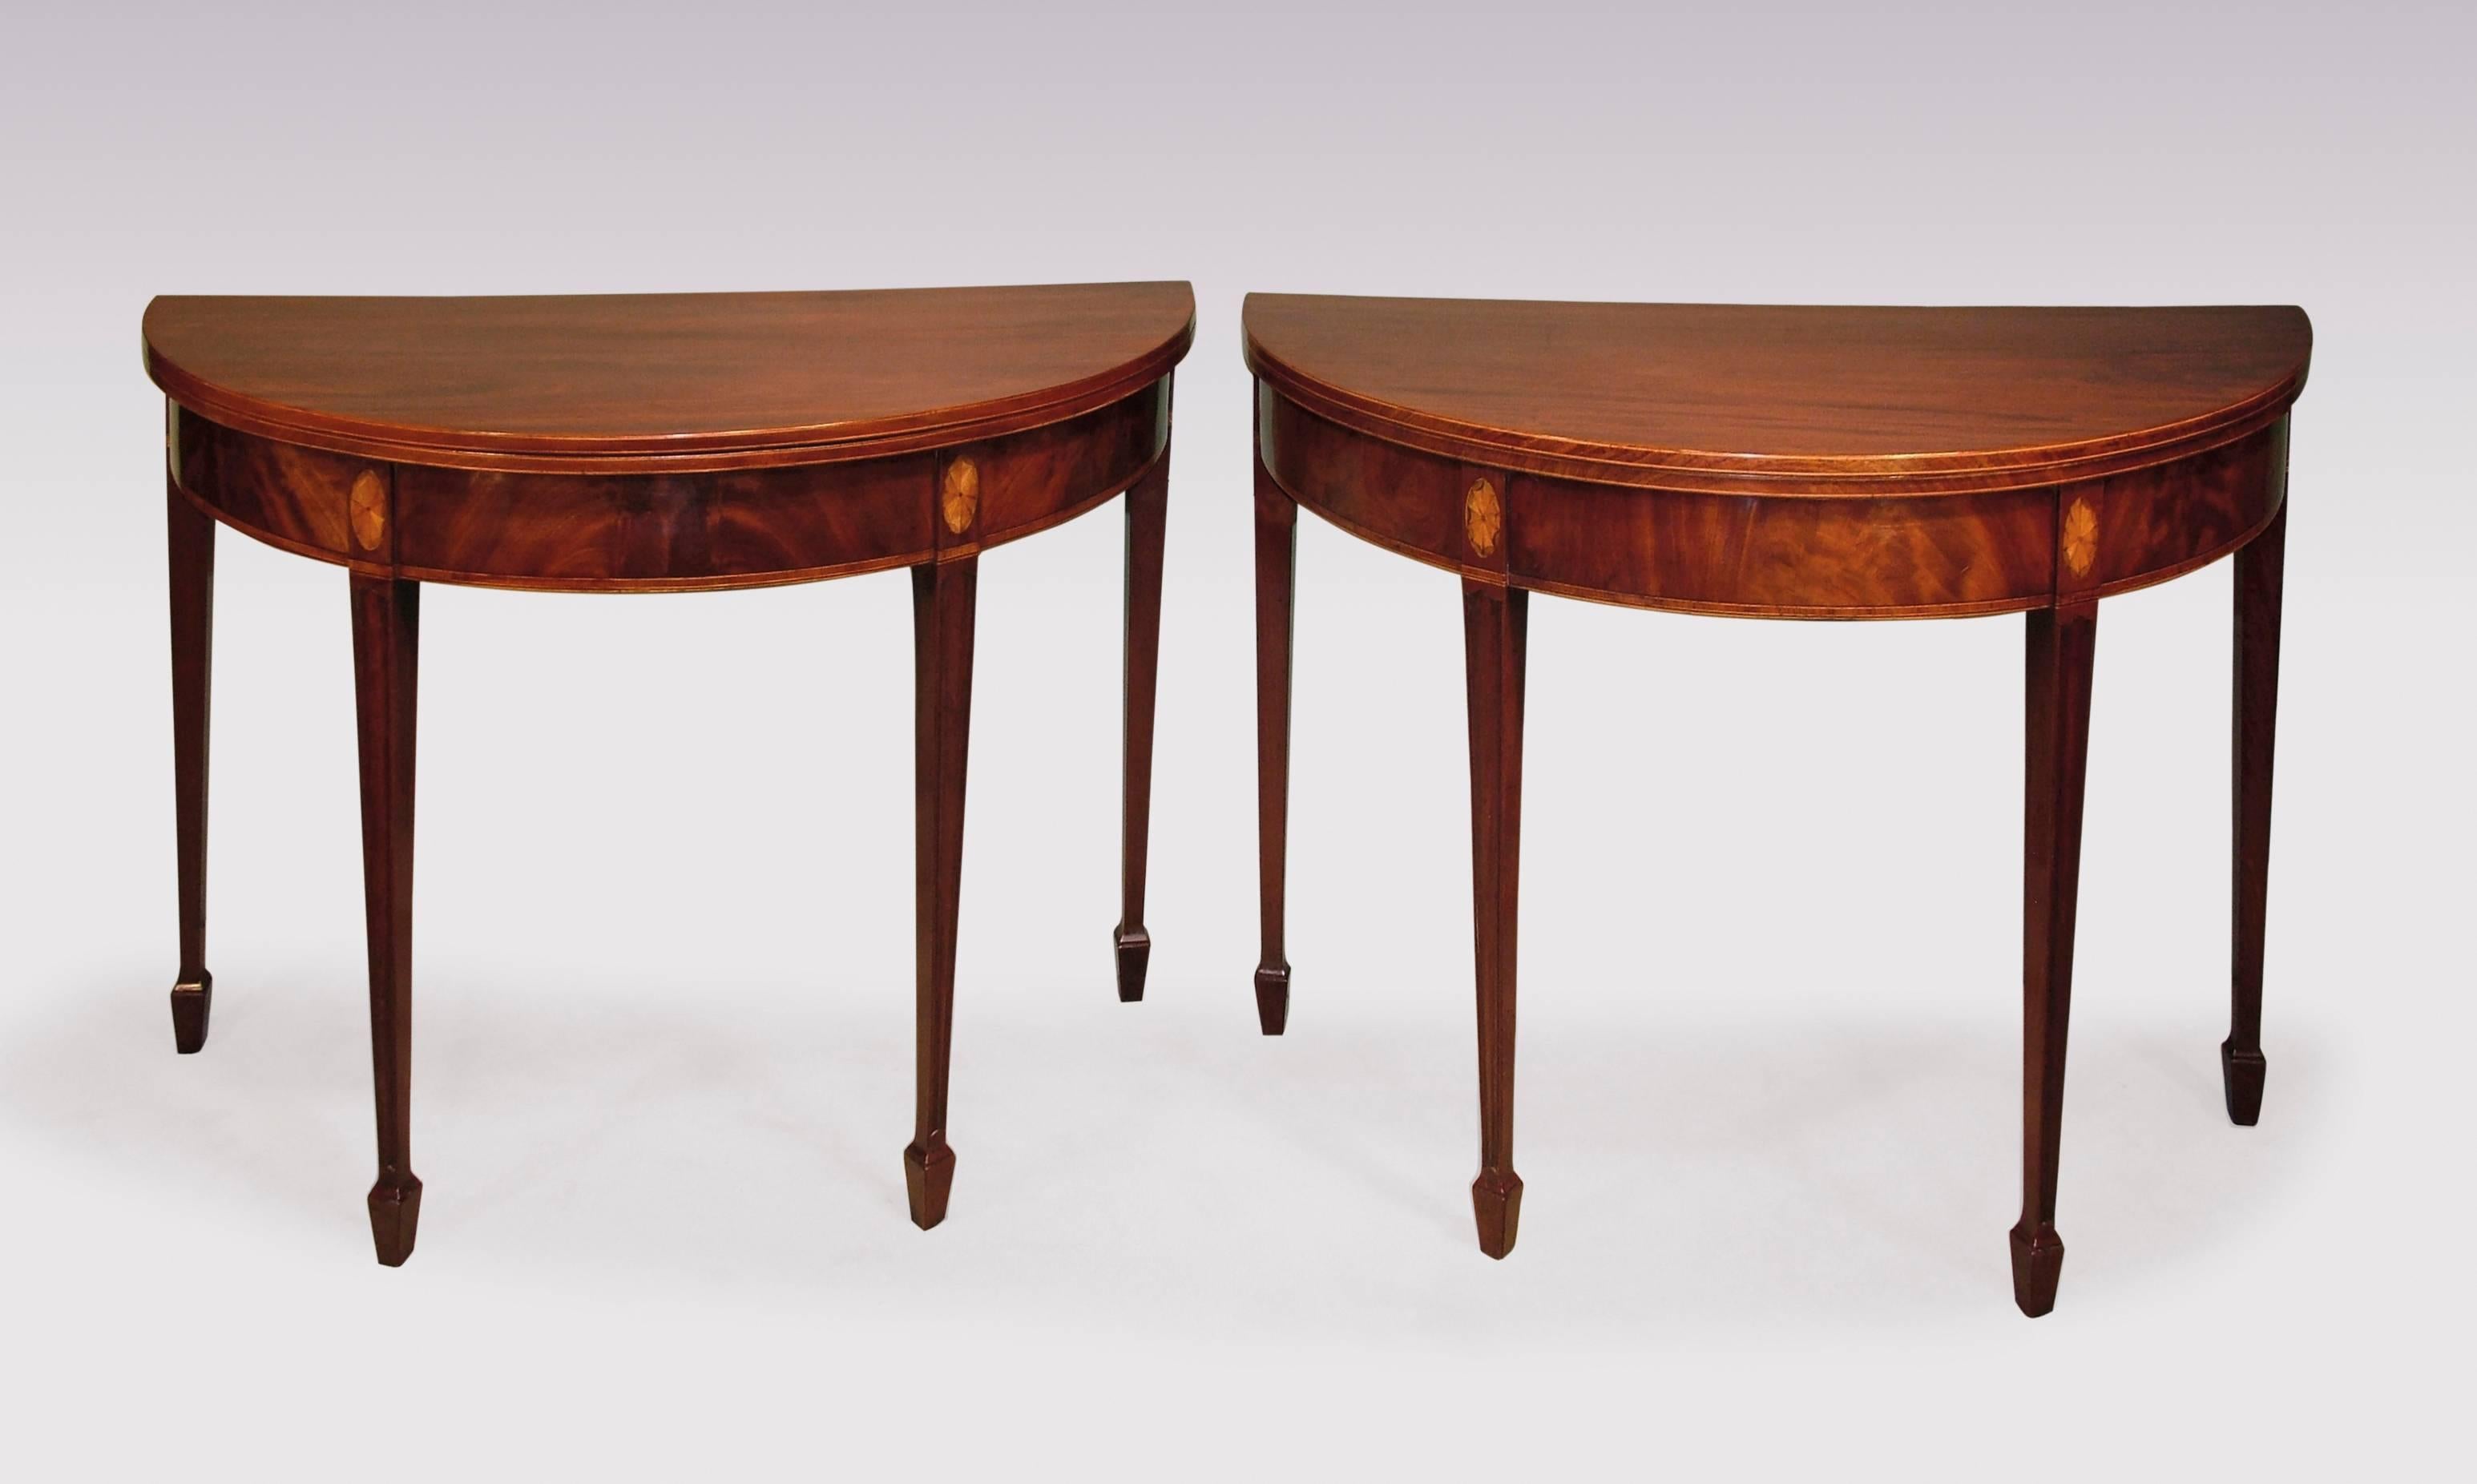 English 18th Century half-round mahogany tea tables